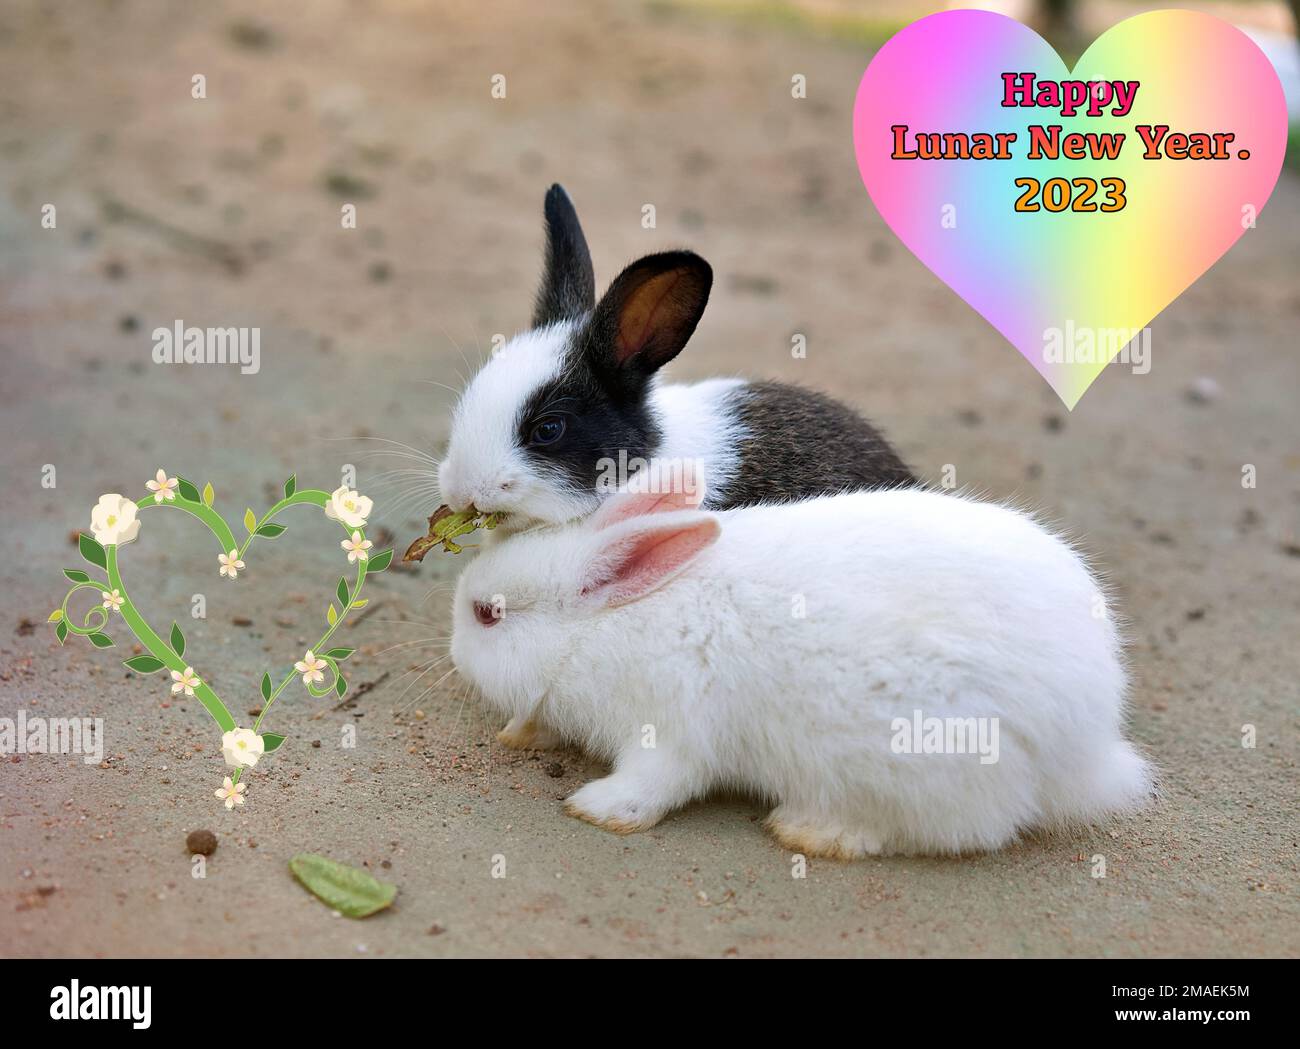 Deux adorables lapins partageant un repas, avec un joyeux salut du nouvel an lunaire. Banque D'Images